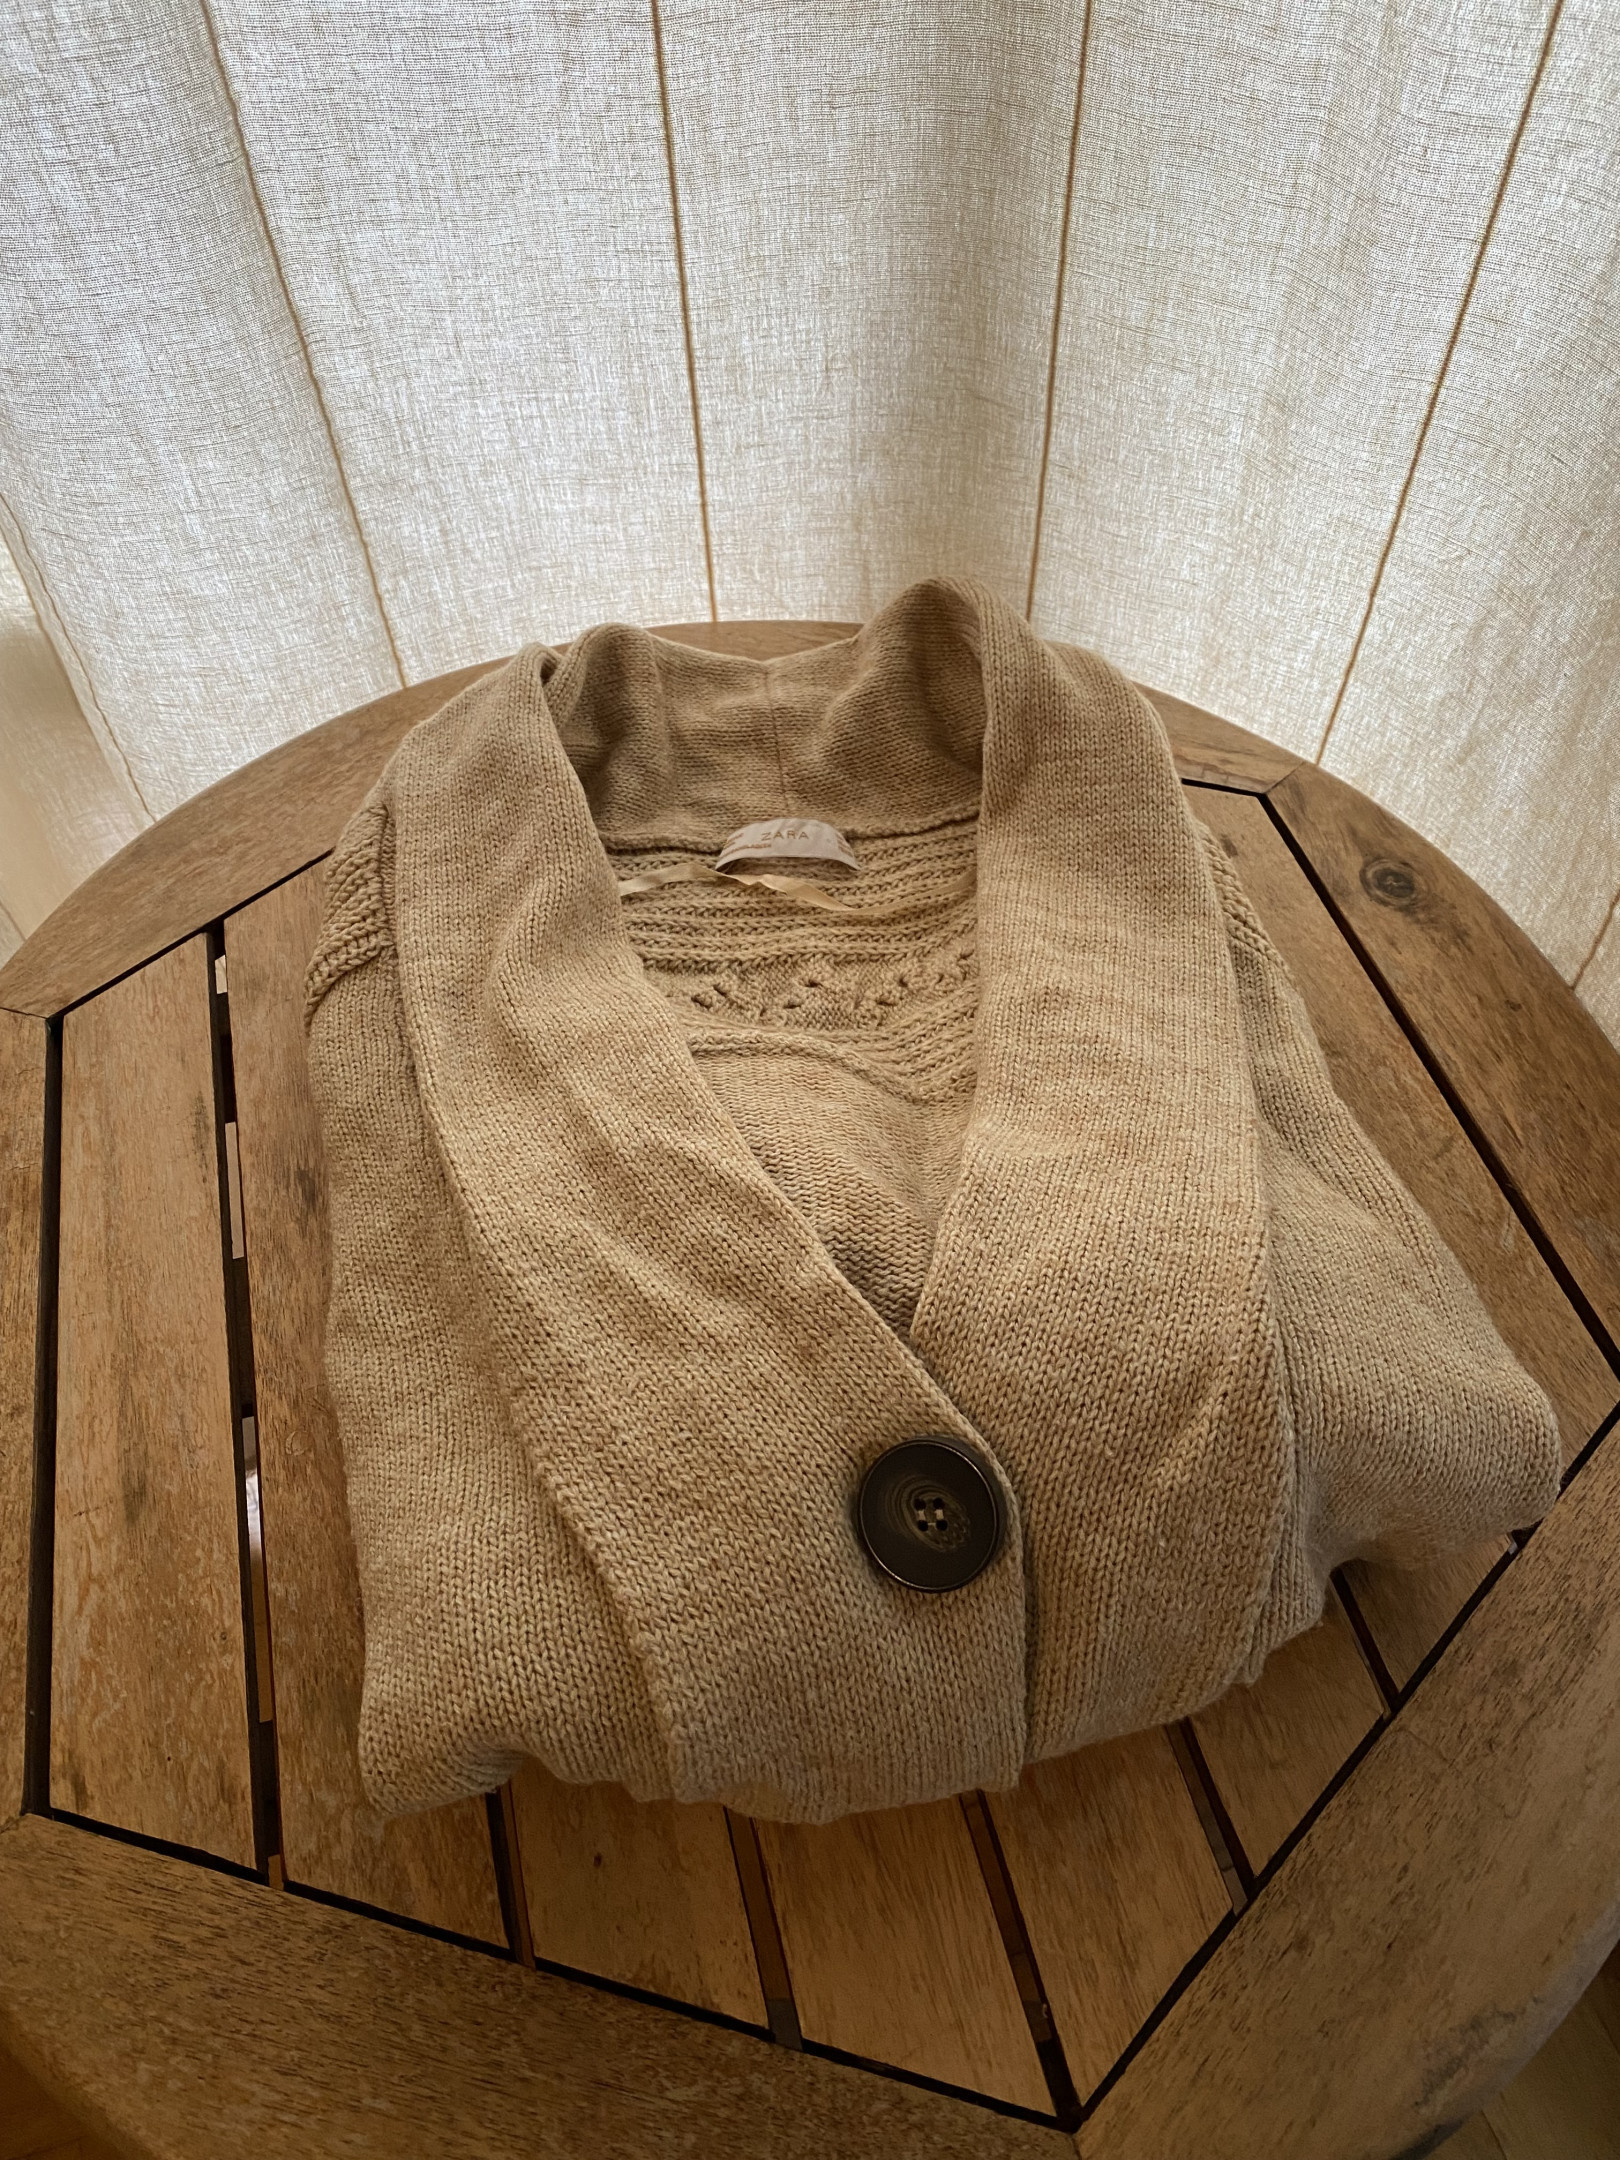 Camel sweater/cardigan. Zara size M